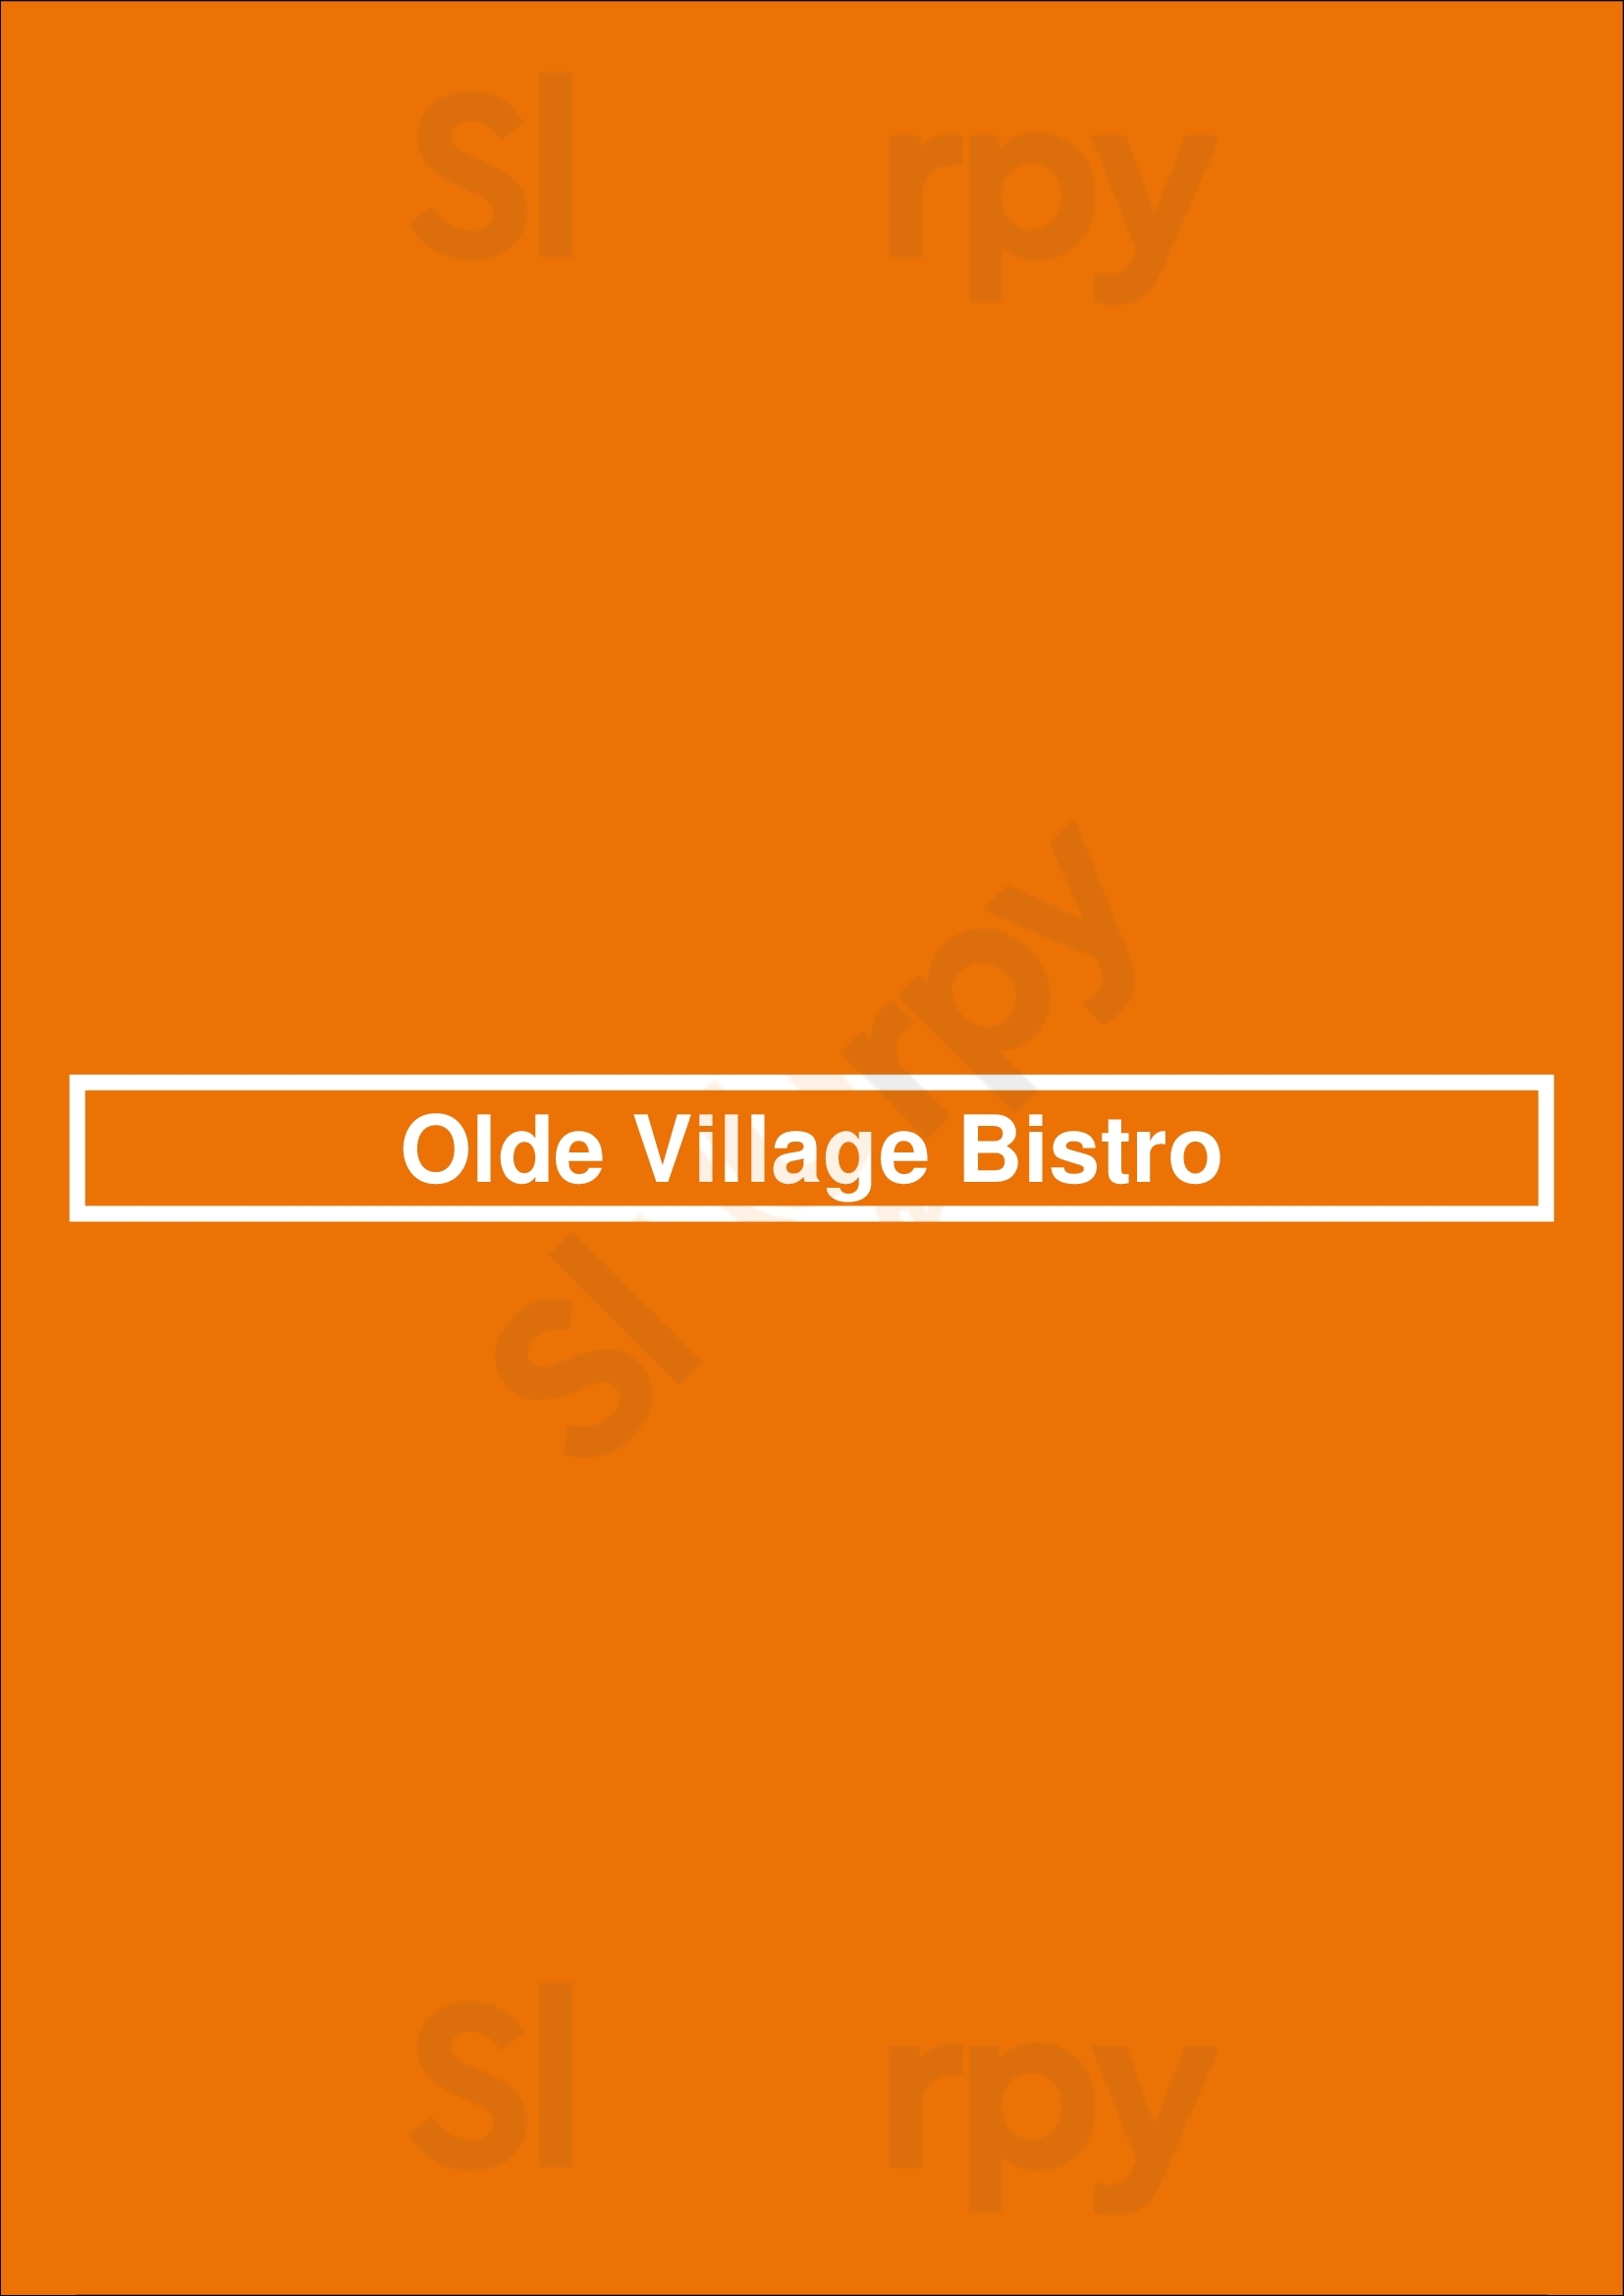 Olde Village Bistro Markham Menu - 1